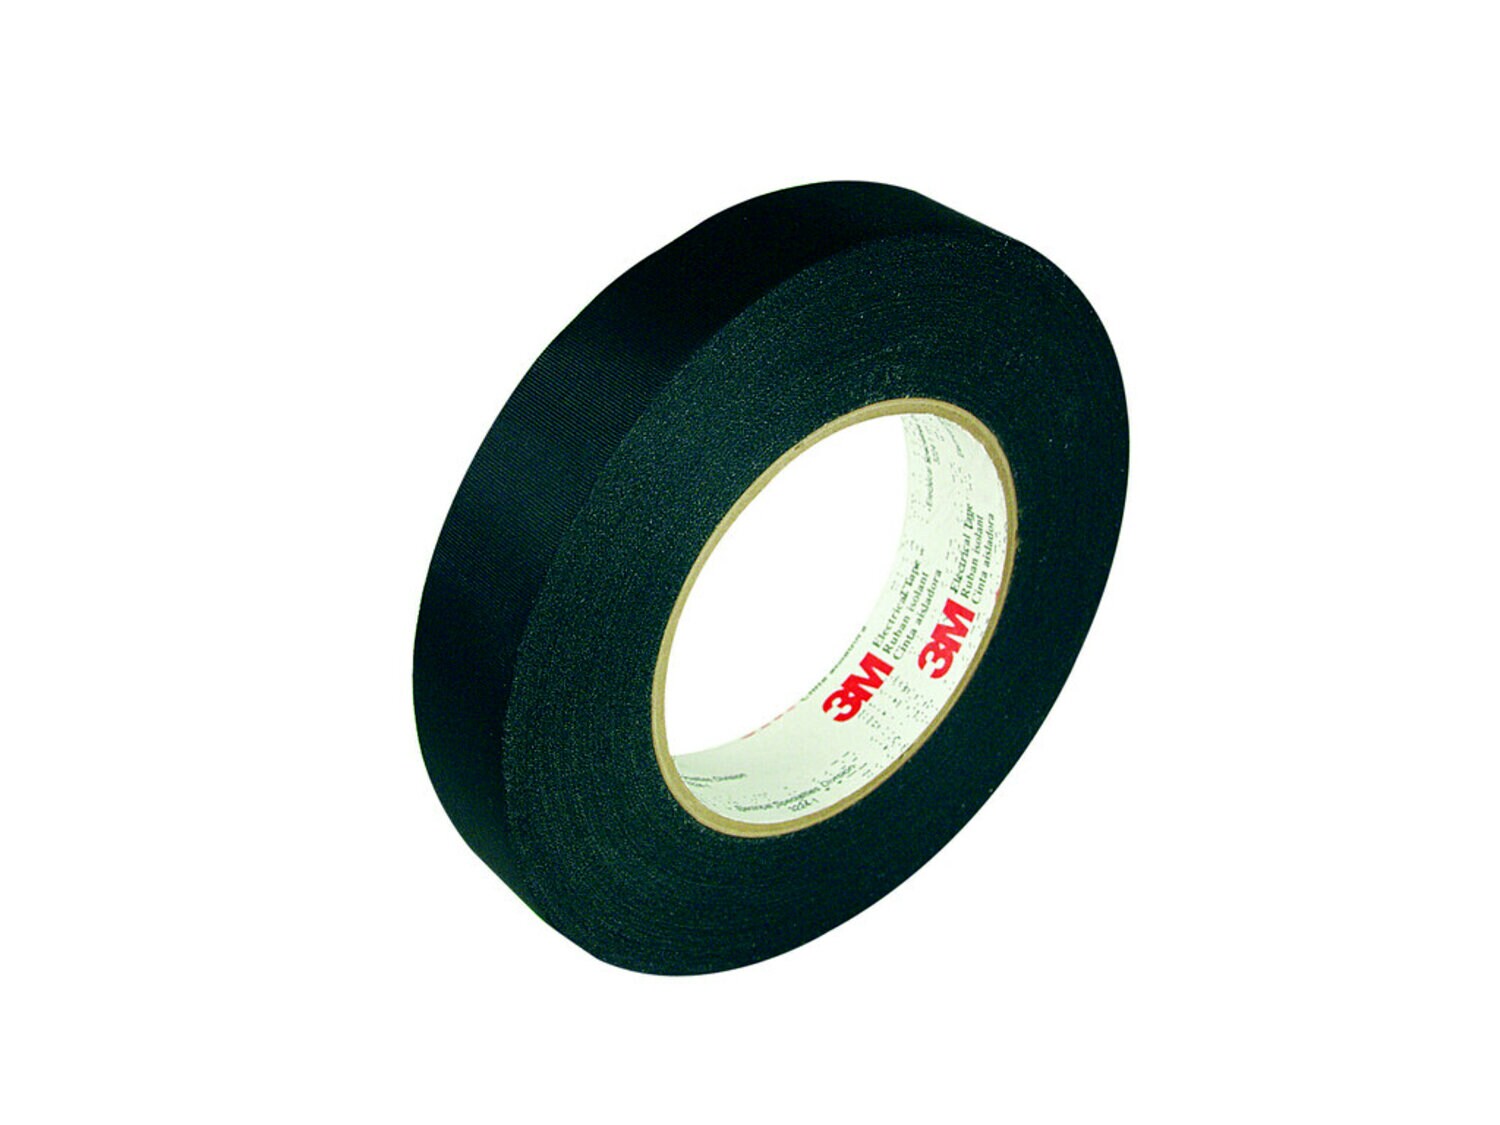 Scotch® Heavy Duty Rubber Electrical Tape 70 HDT, 1 in x 30 ft, Sky  Blue/Gray, 1 roll/carton, 24 rolls/case